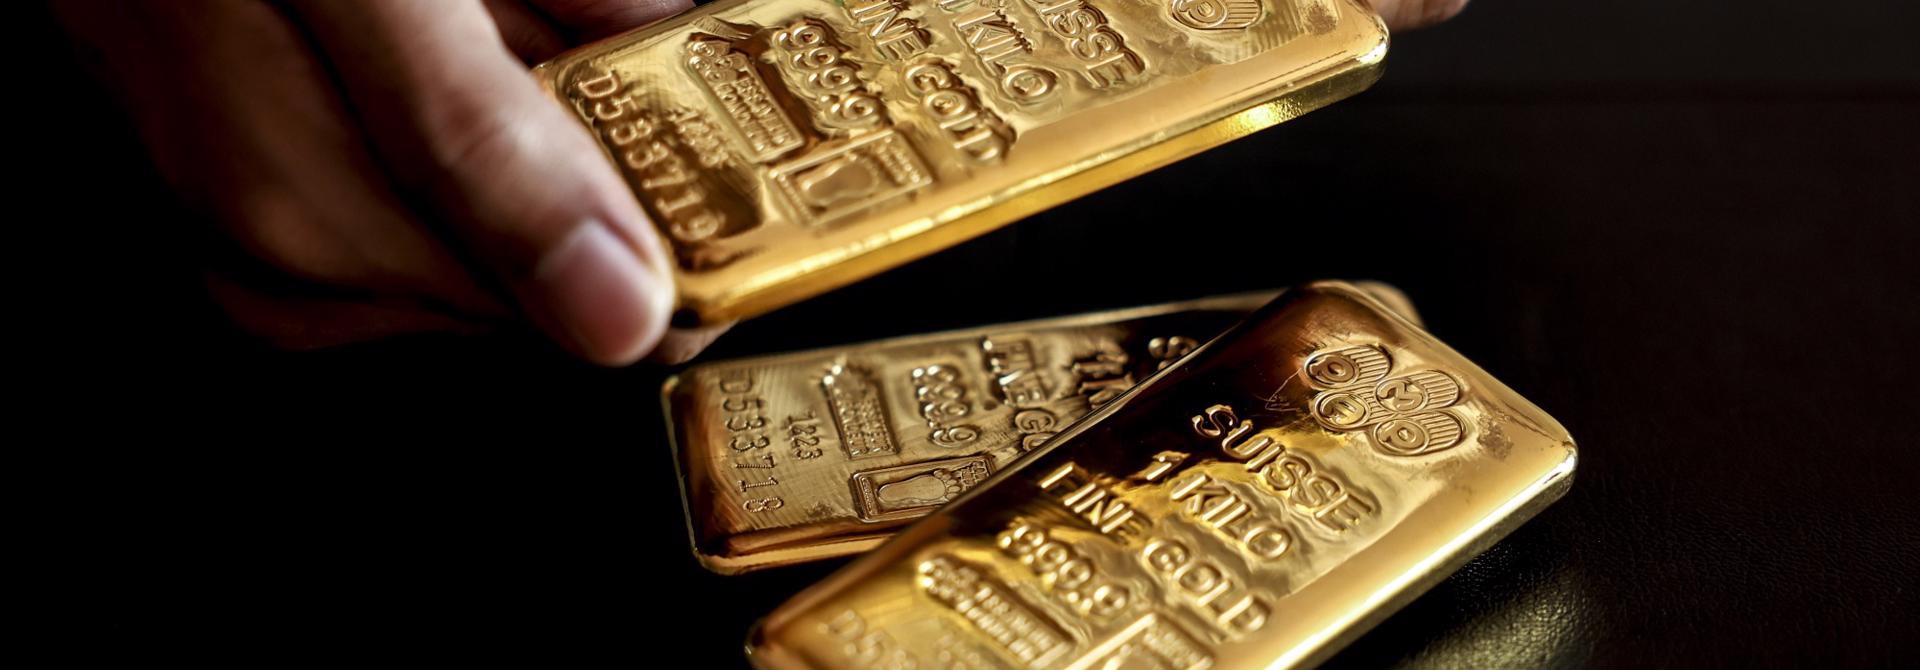 Giá vàng miếng bất ngờ nhảy vọt 1,5 triệu đồng/lượng dù giá thế giới chững